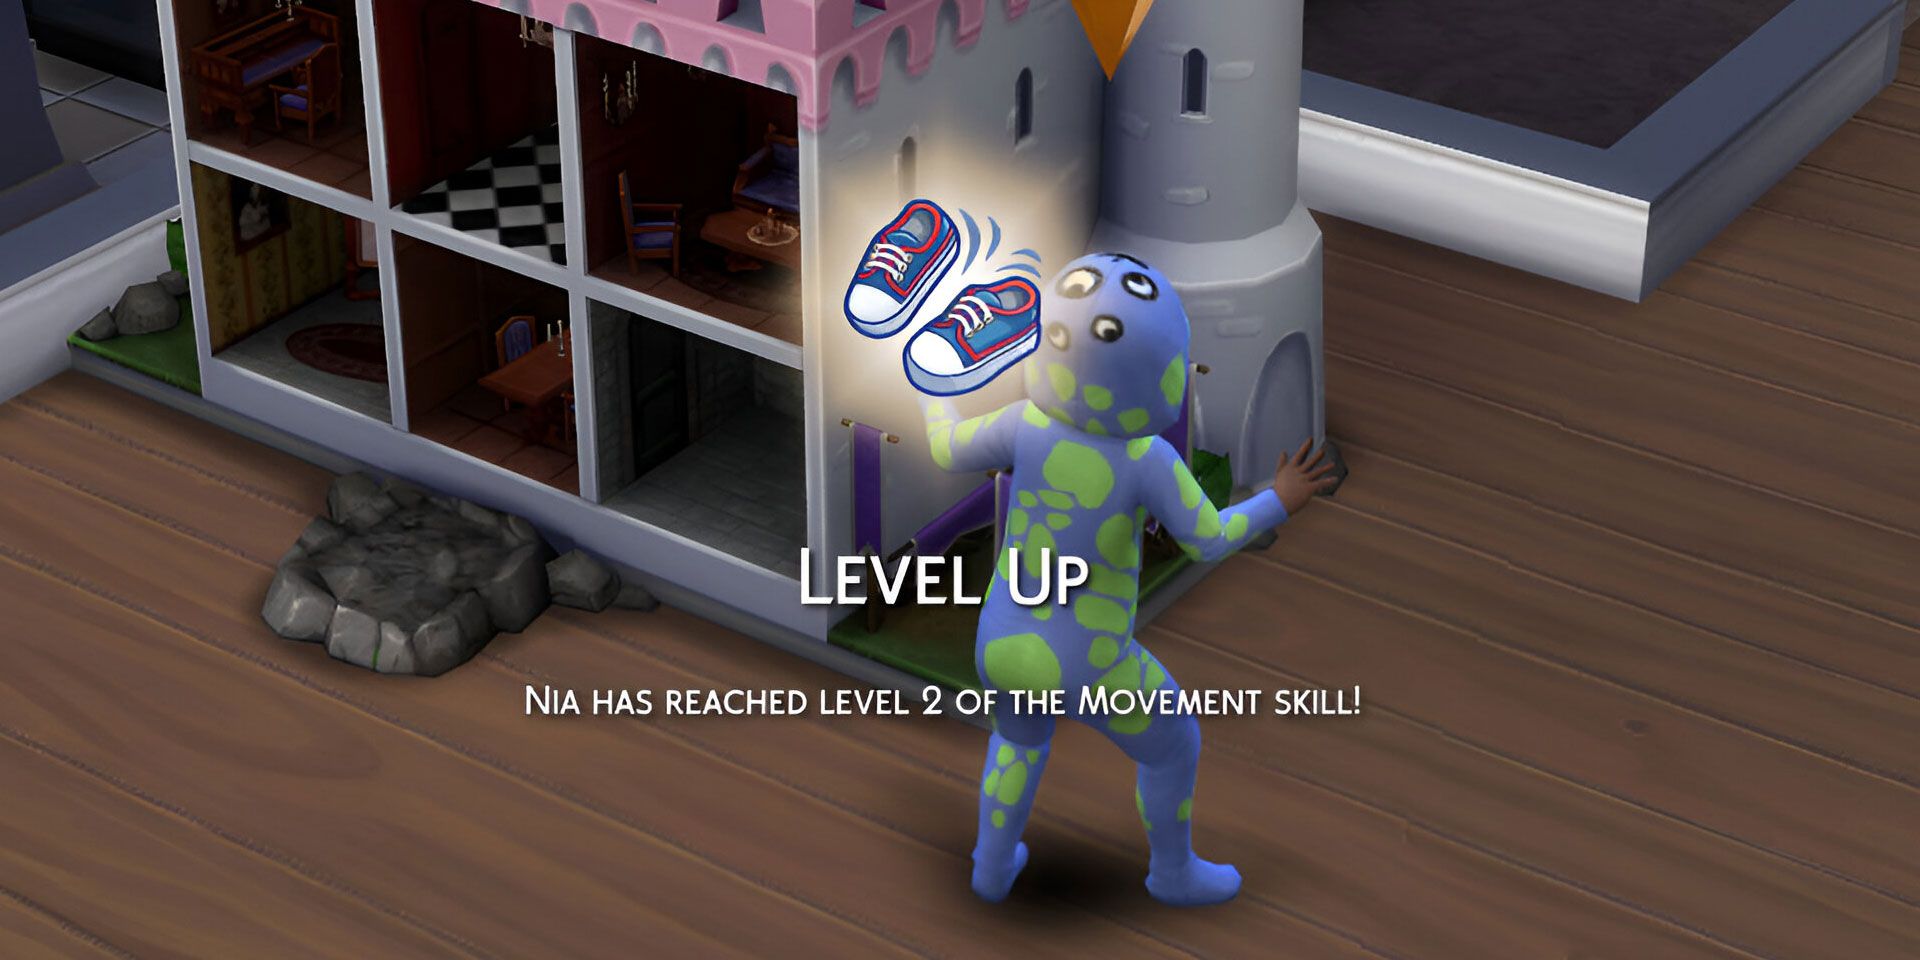 Schermata del banner Level Up per la competenza di Movimento in The Sims 4.